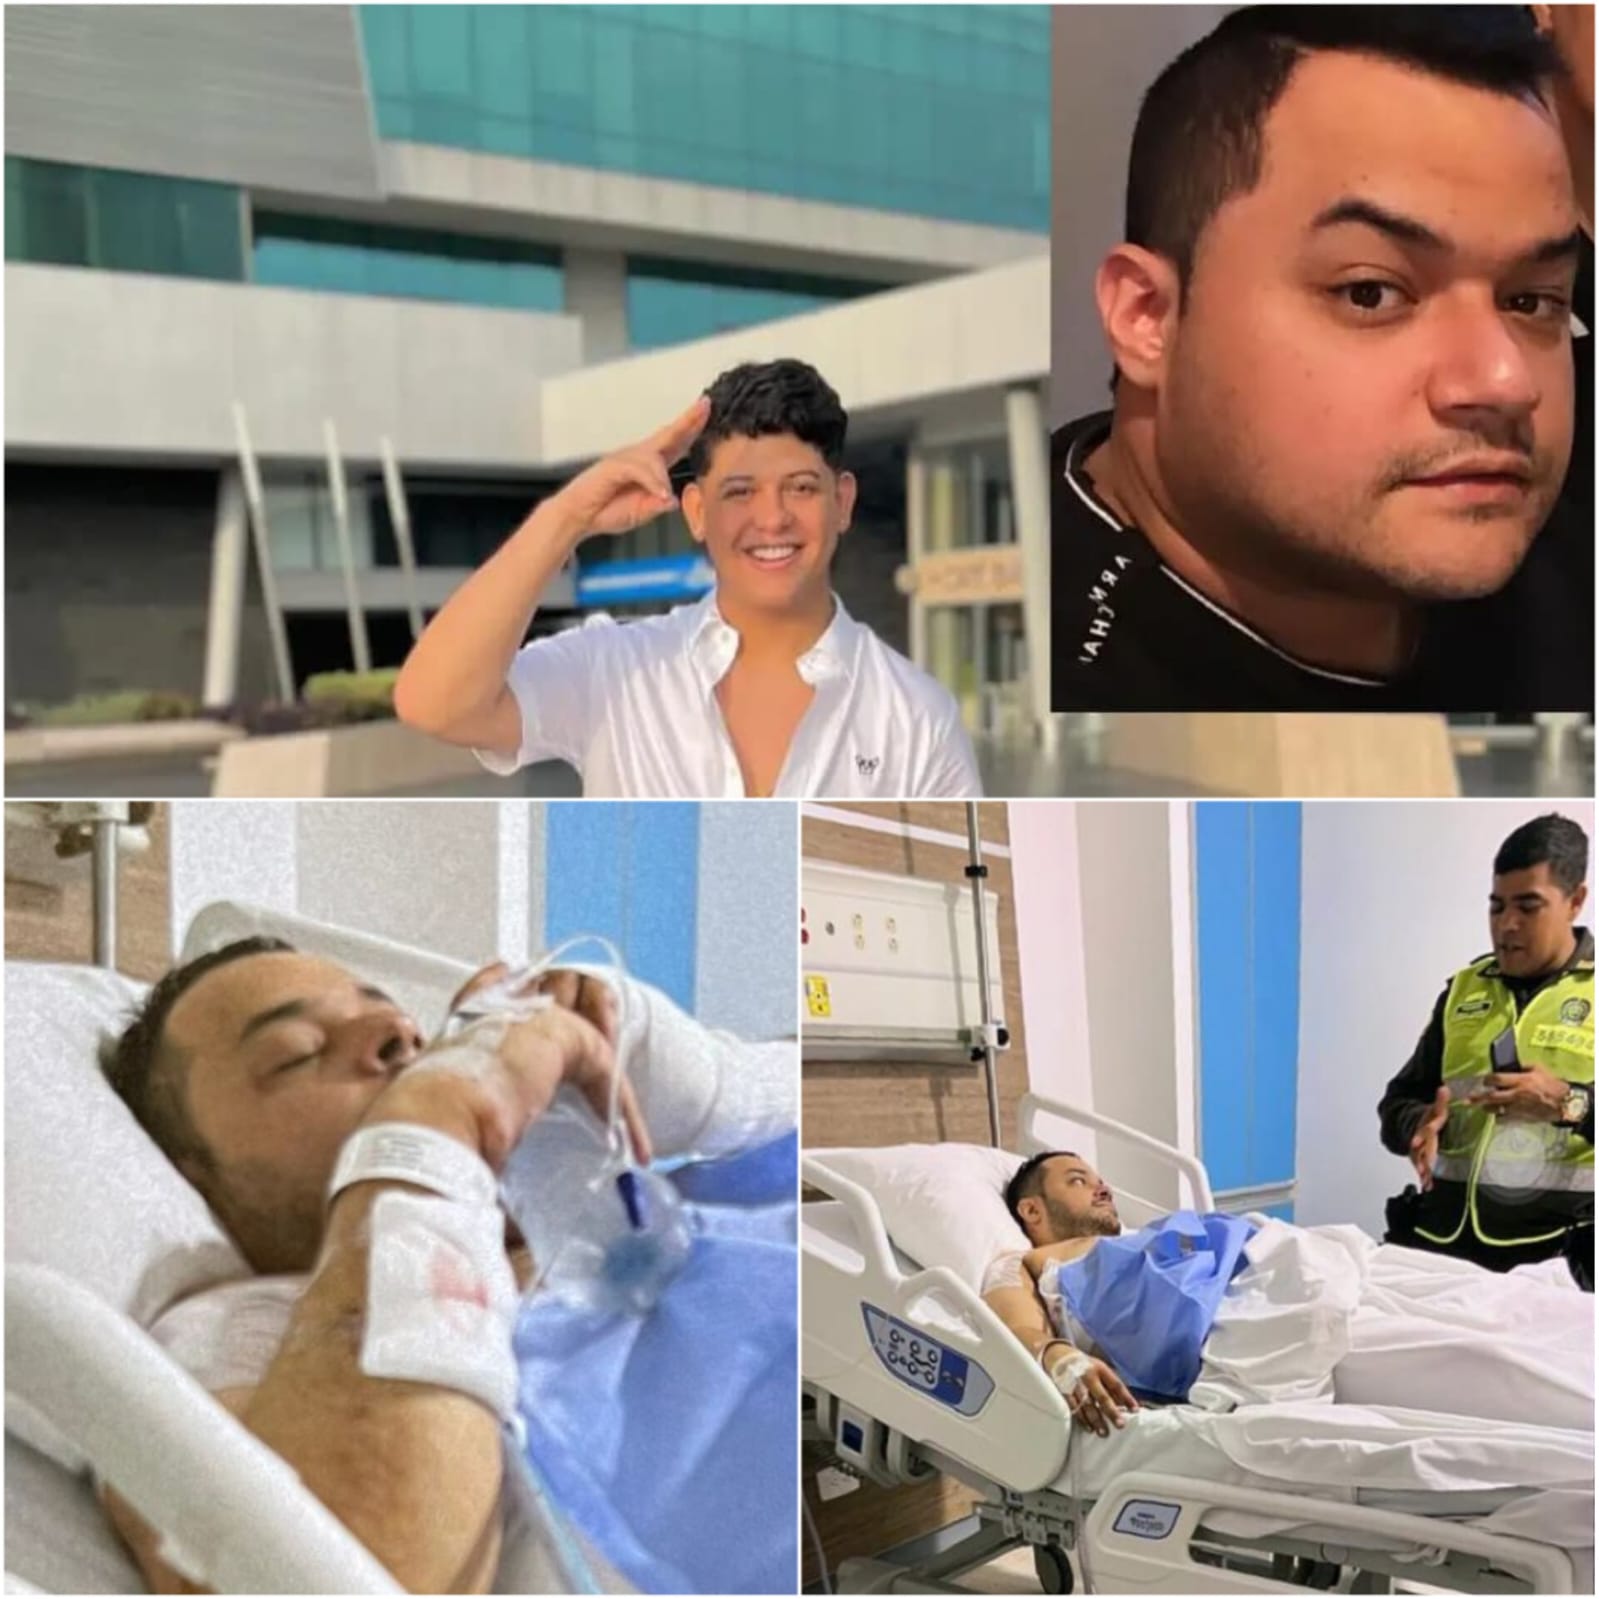 El cantante vallenato Luisra Solano hirió con cuchillo a su manager, Juancho Daza, en Barranquilla